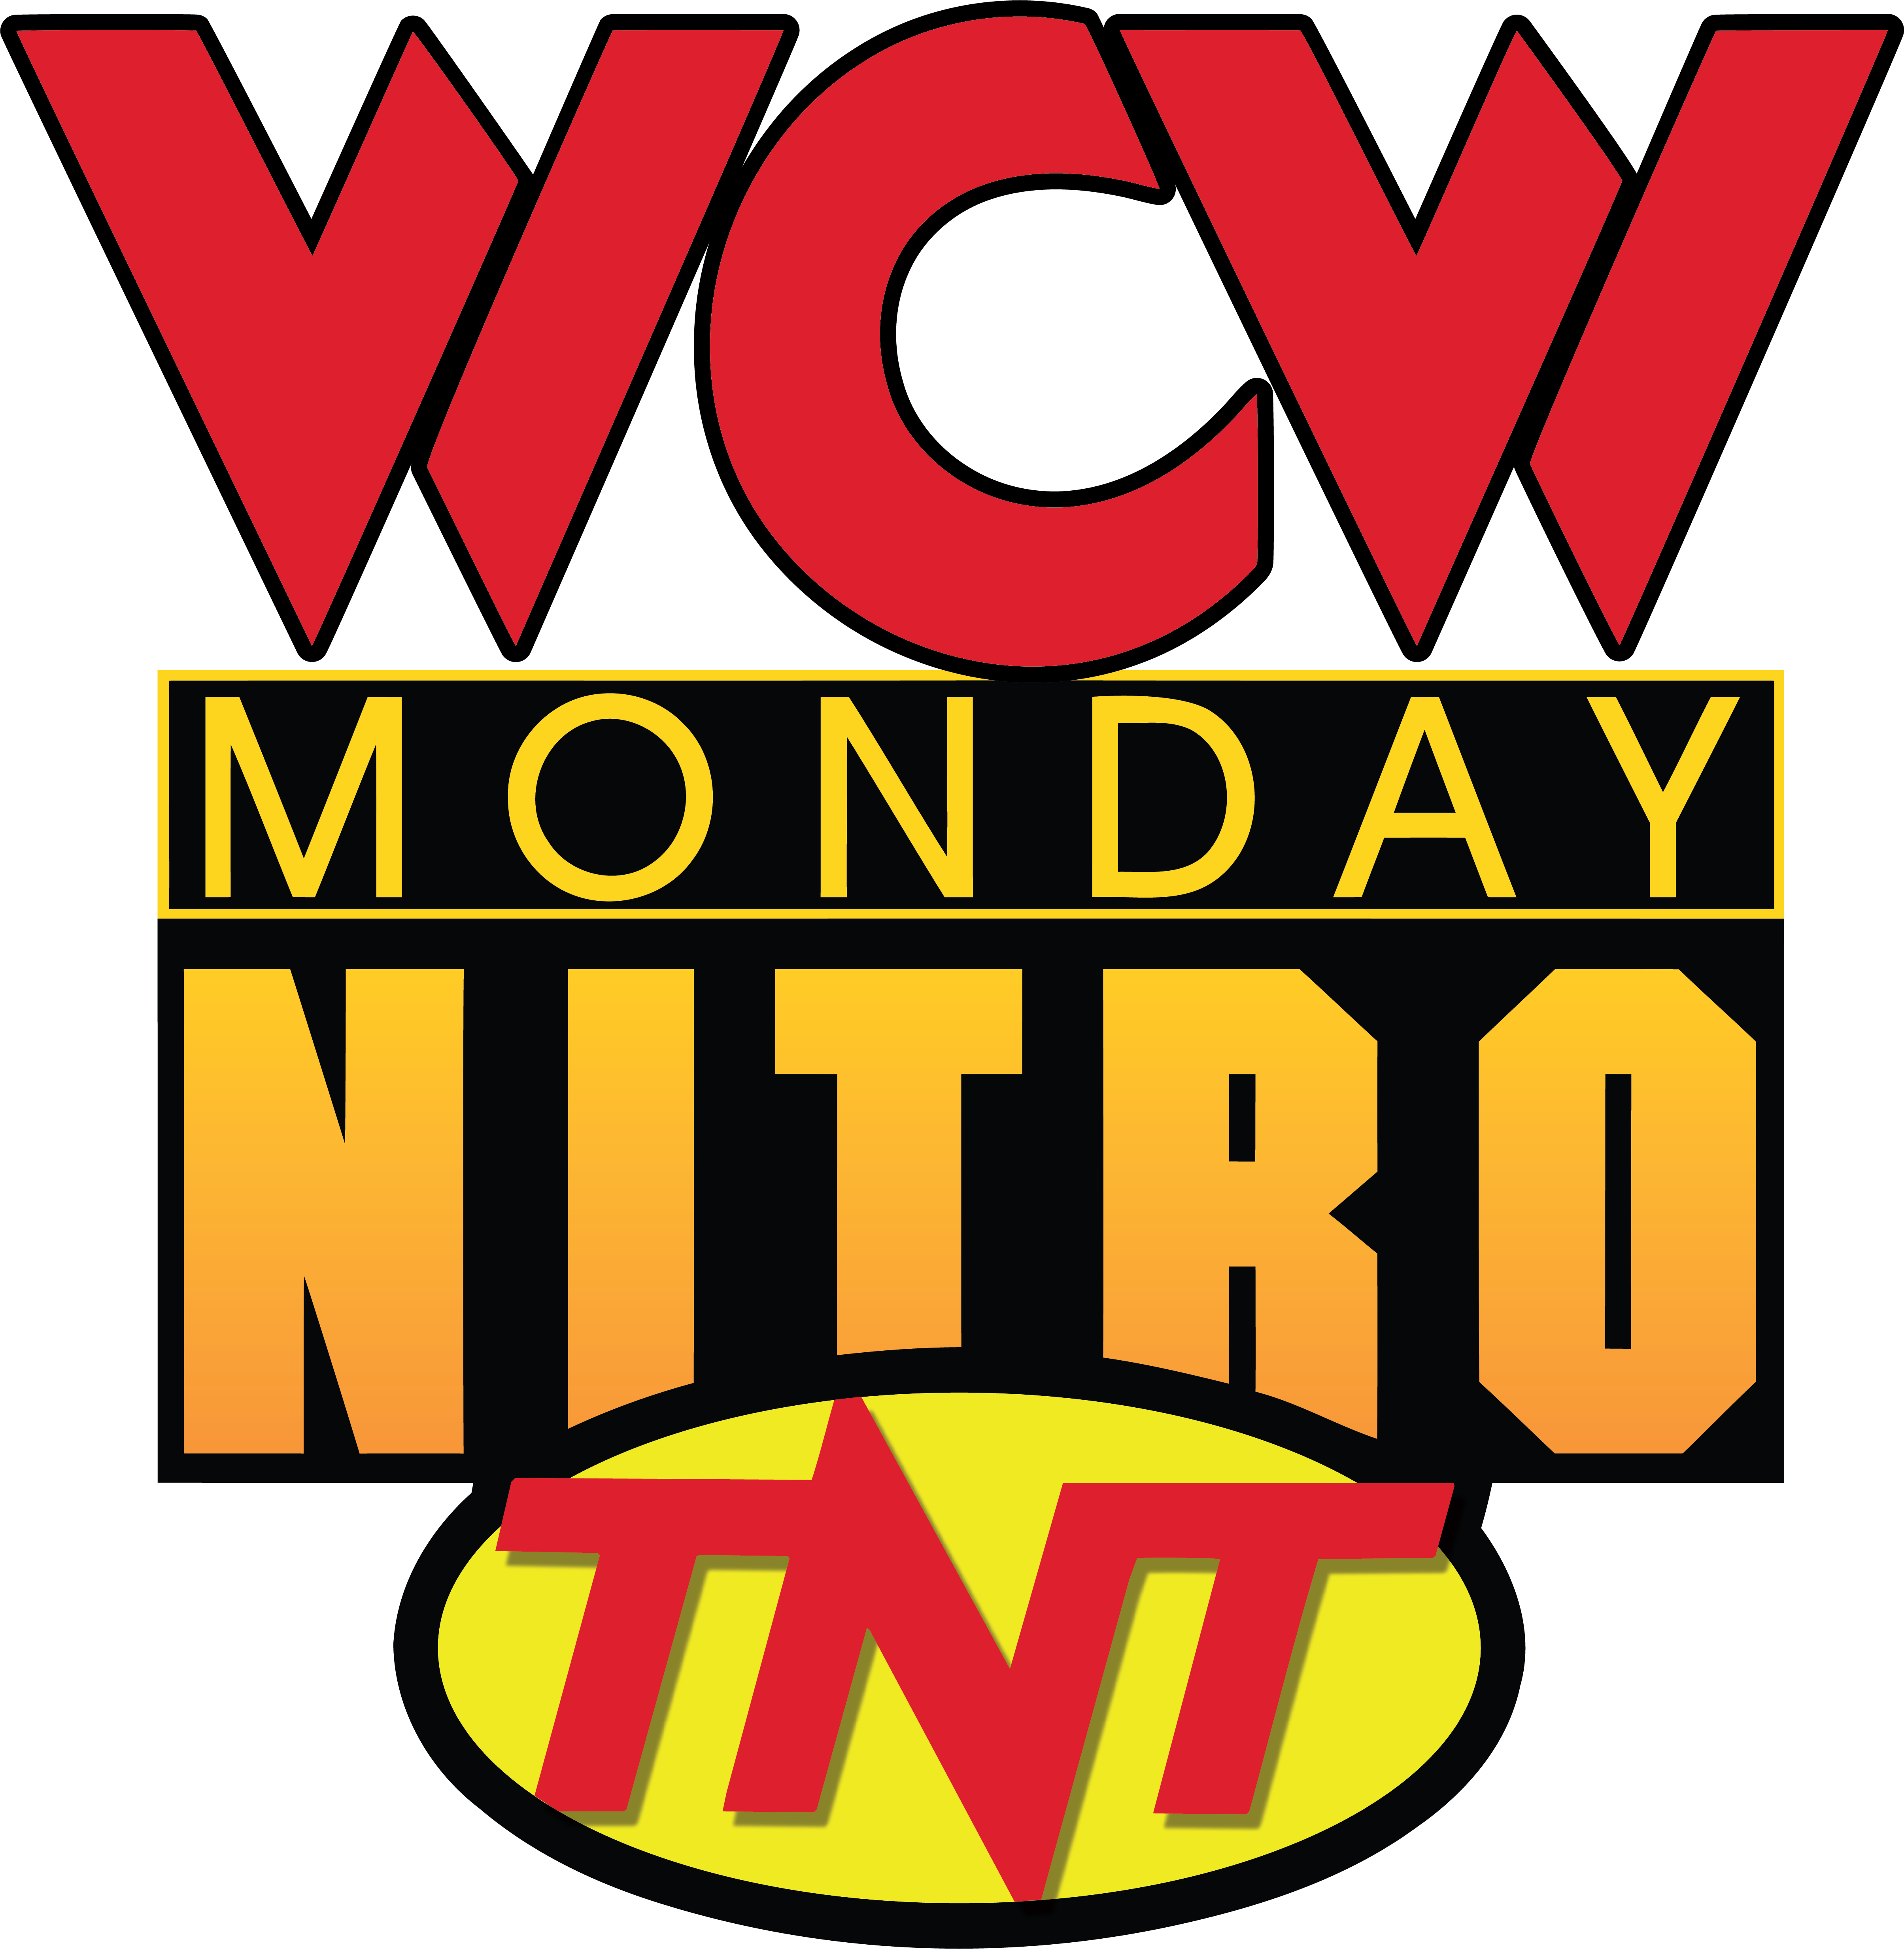 WCW Monday Nitro TNT logo